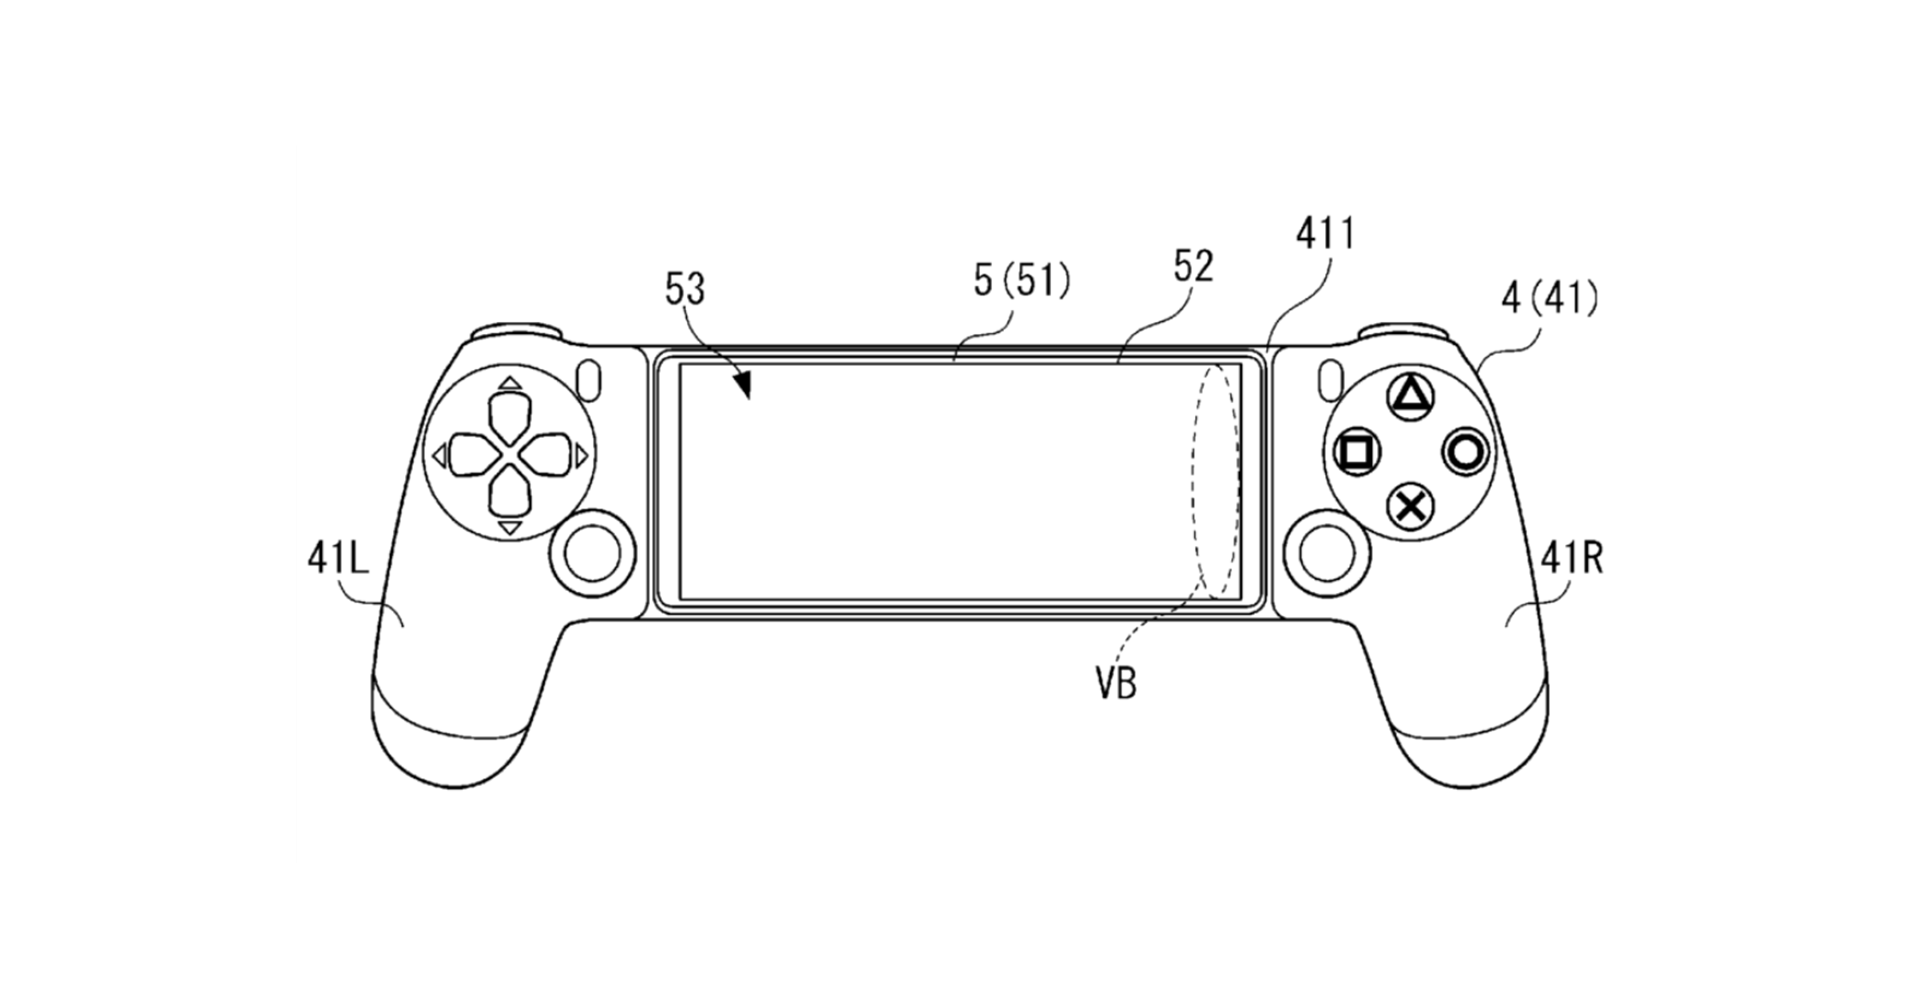 PlayStation Mobile Dualshock